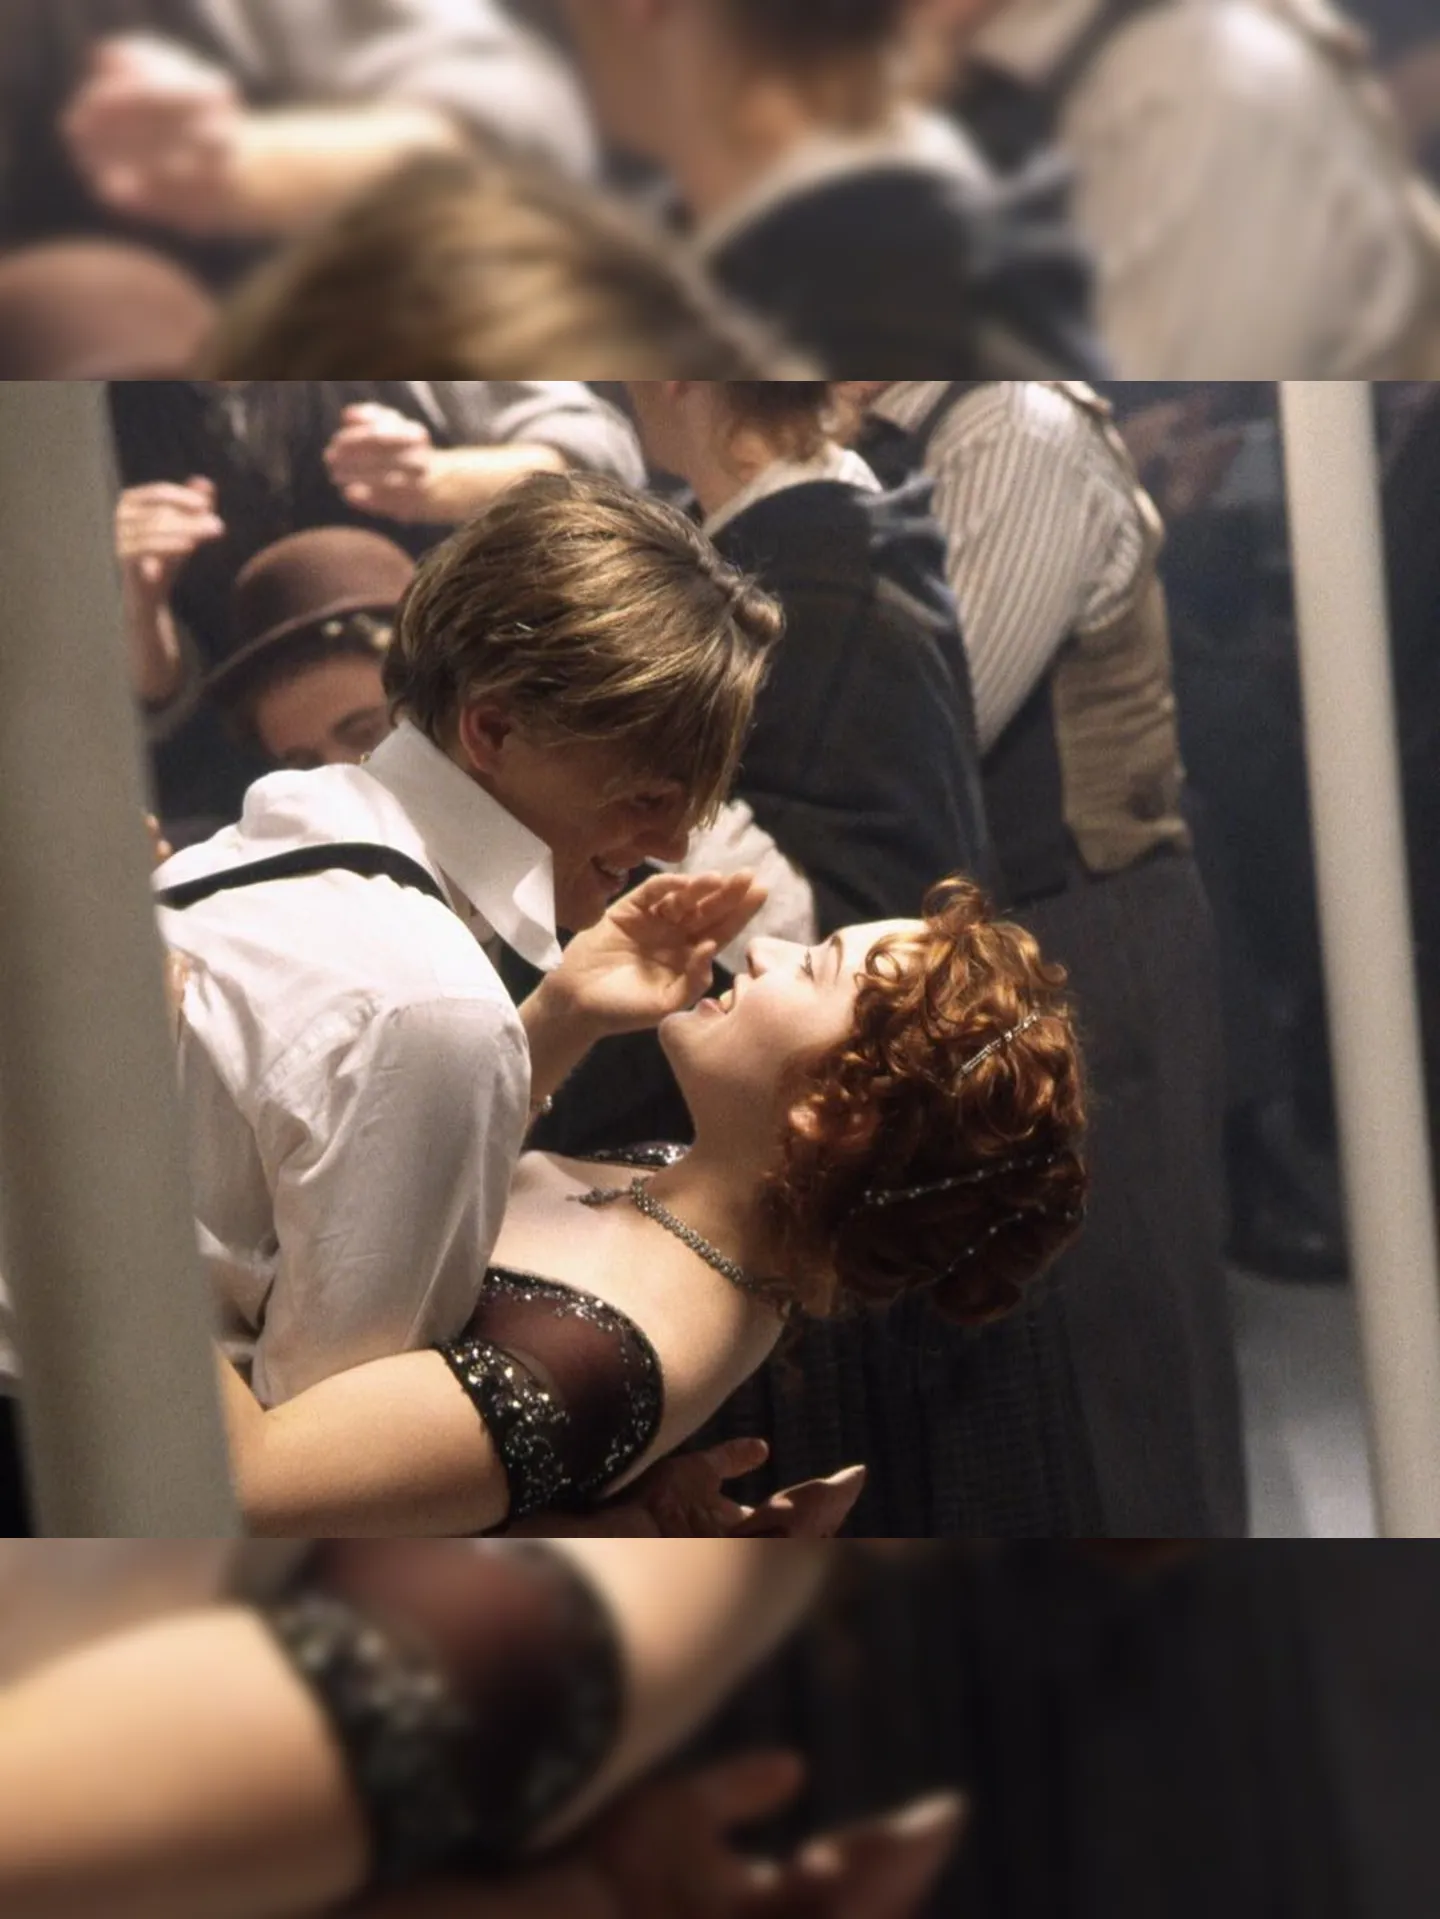 O personagem Jack e Rose (Kate Winslet) em cena no filme que arrebatou os fãs há mais de 20 anos